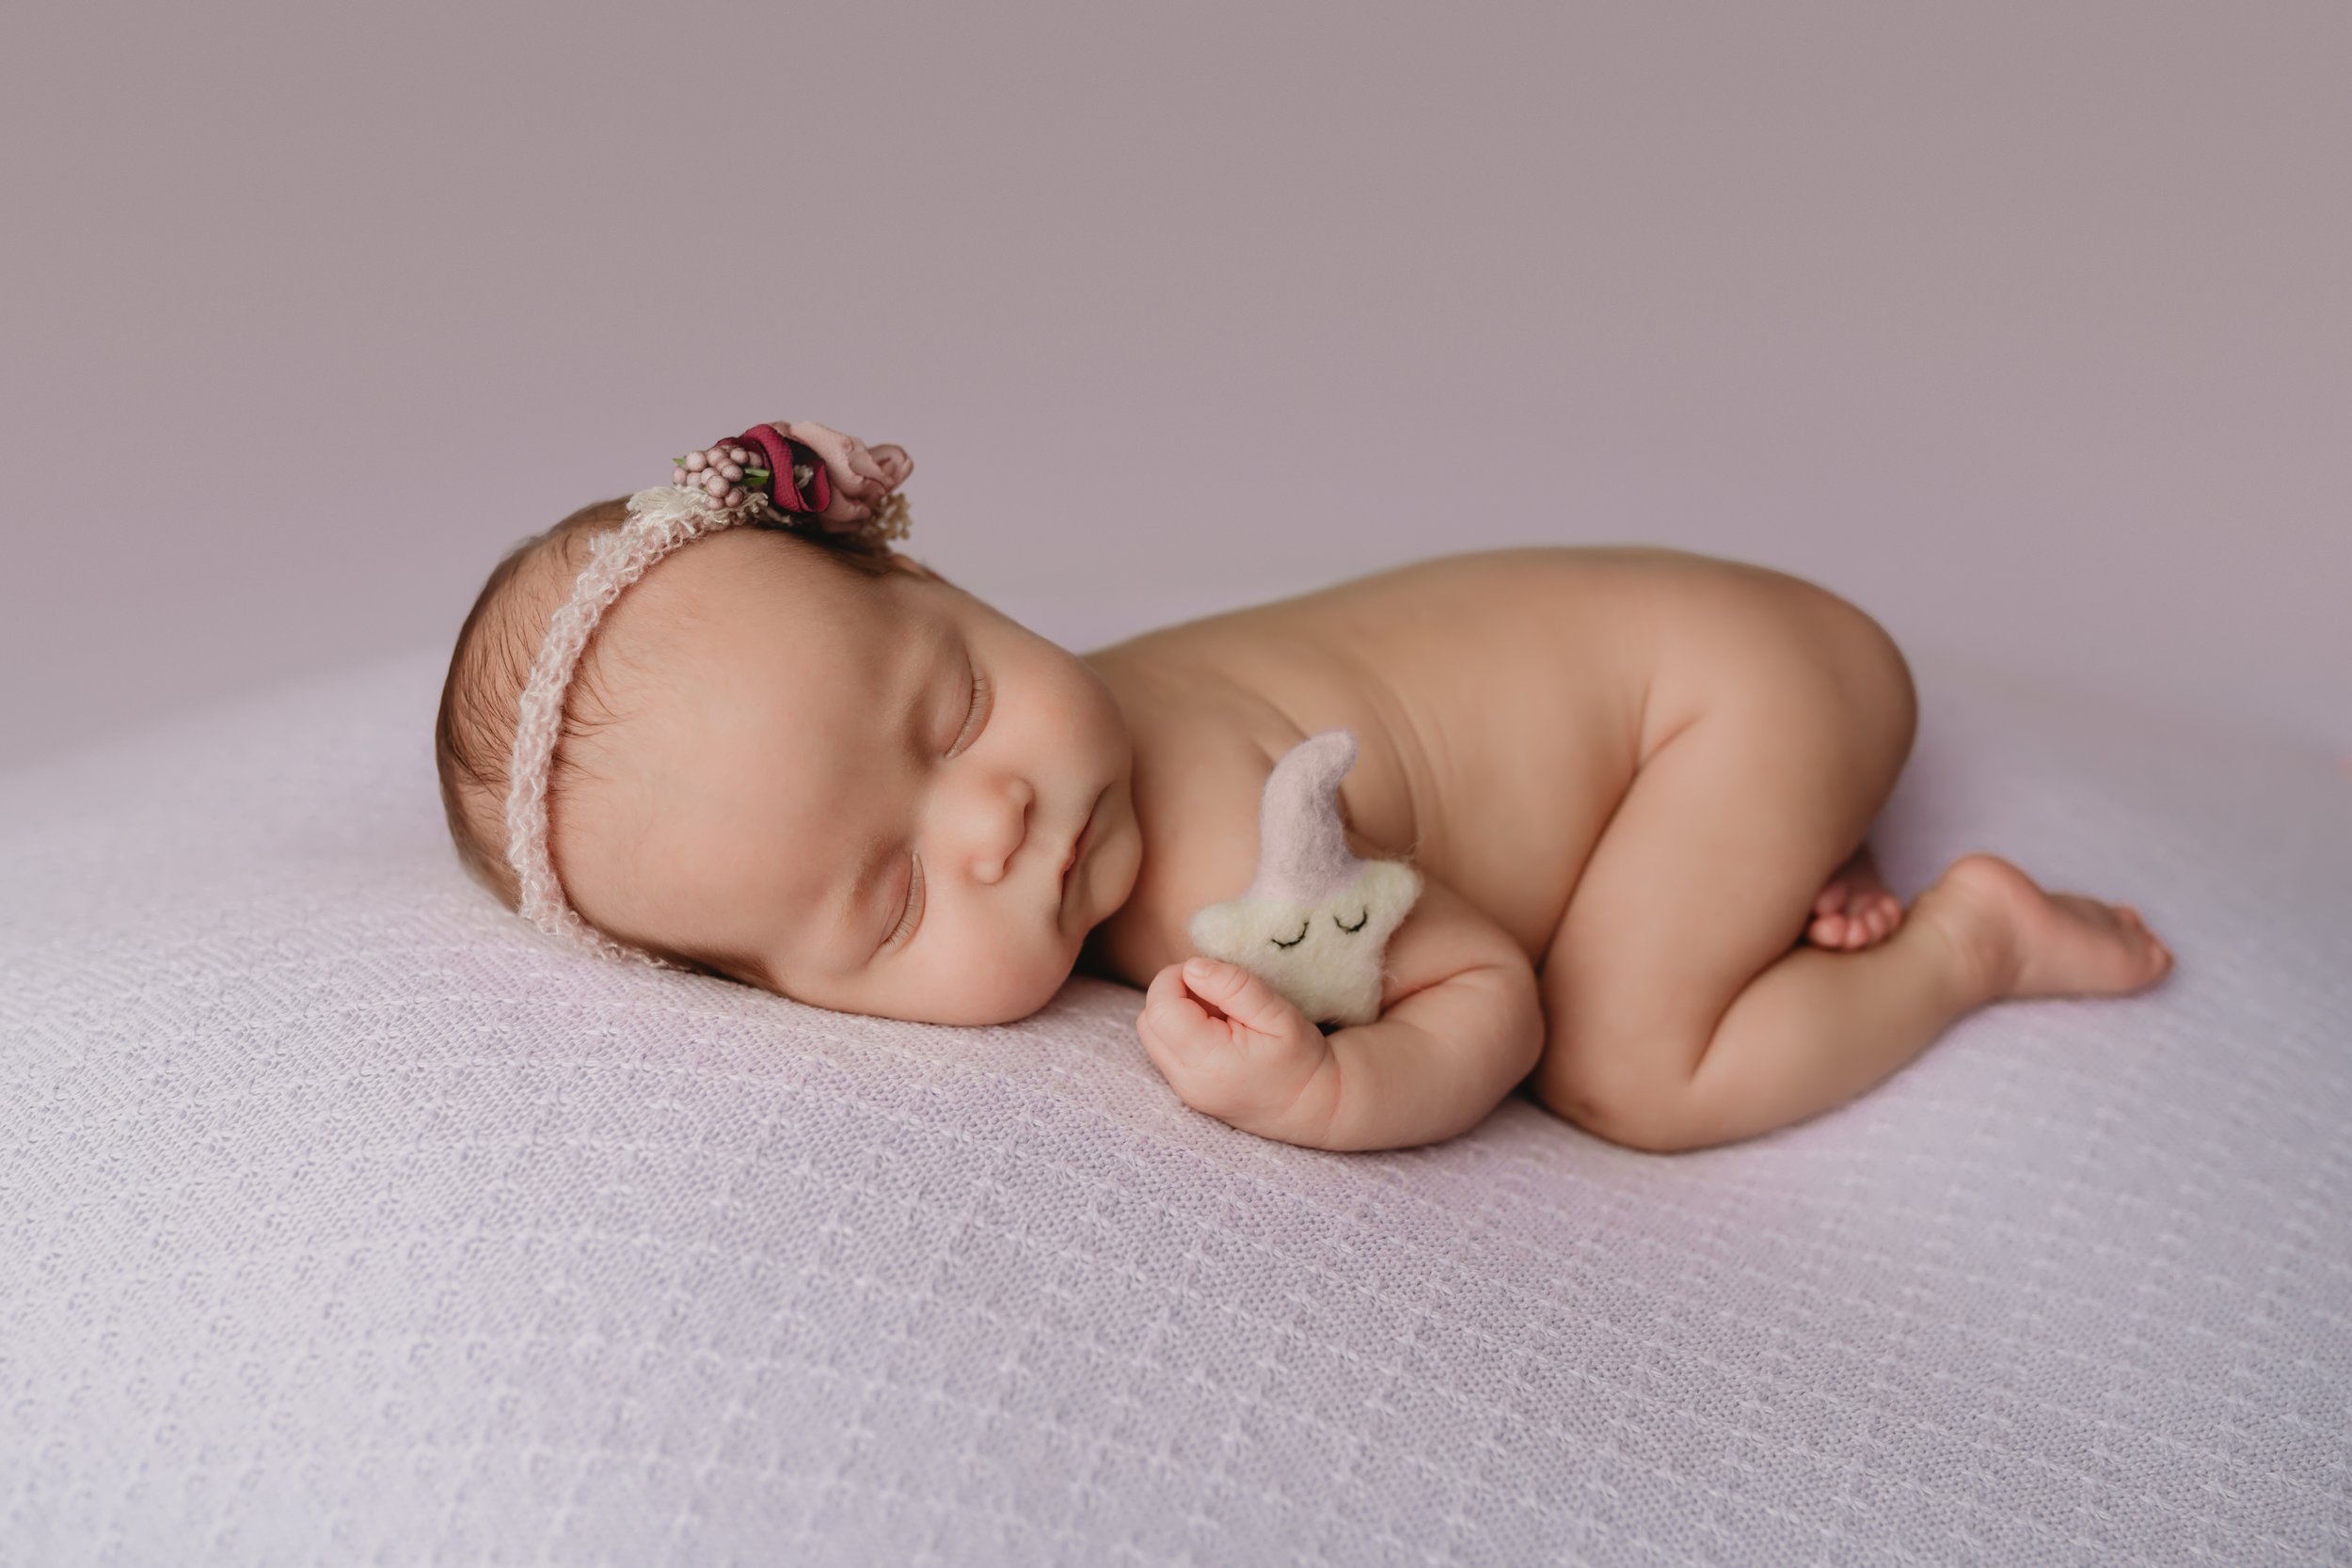 Boca-Raton-Newborn-Photographer-Baby-in-purple-Tushie-up